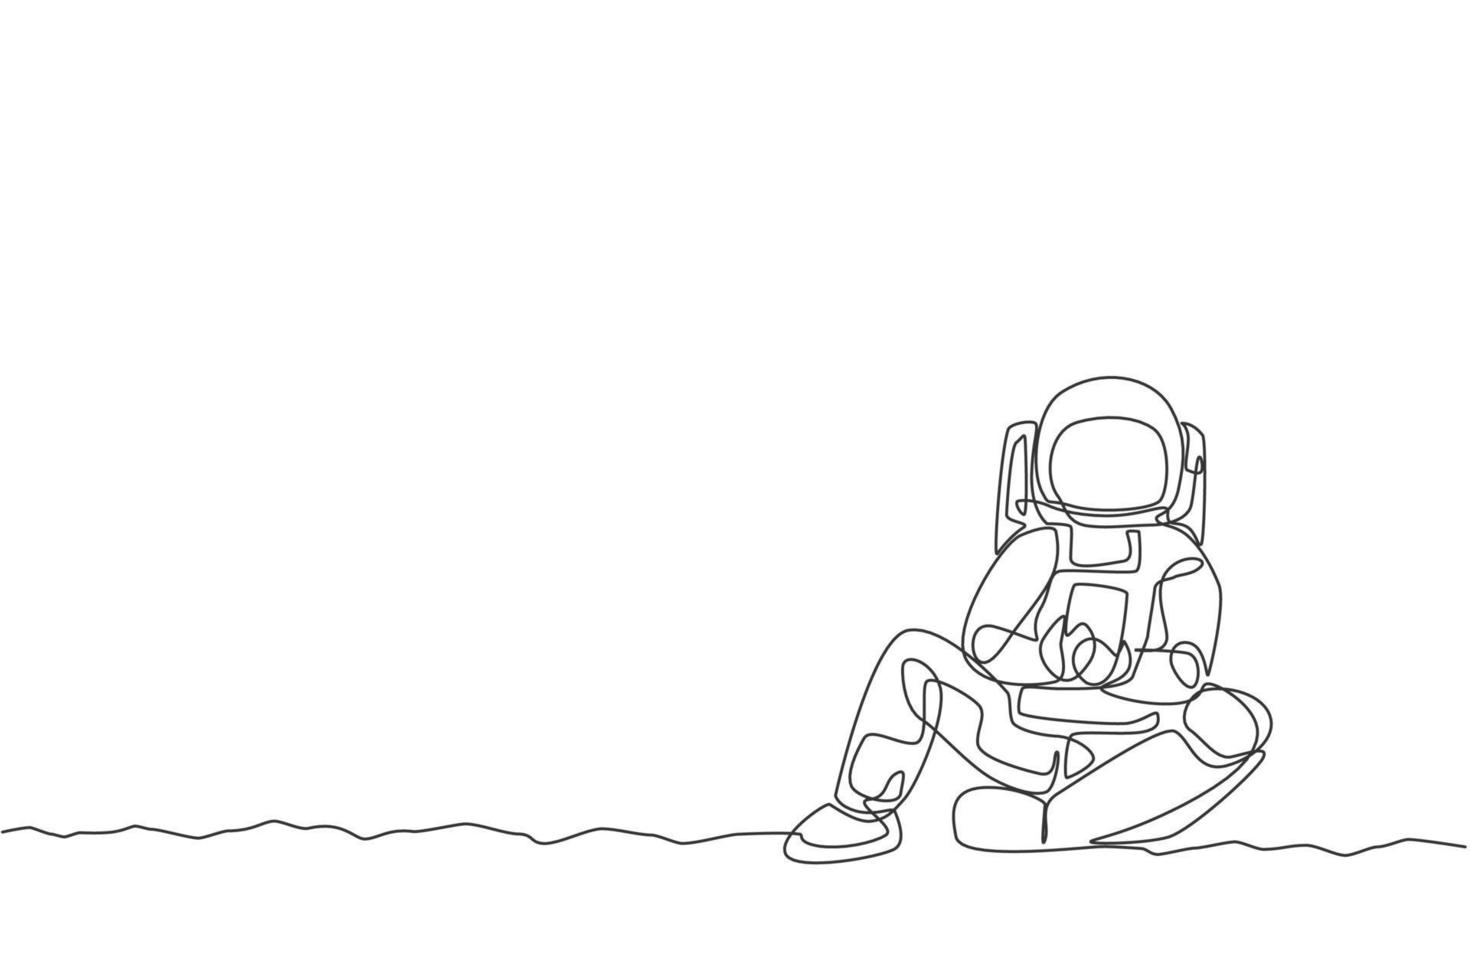 un dibujo de línea continua de un joven astronauta en traje espacial que se relaja en la superficie de la luna mientras envía mensajes de texto. Oficina de negocios de astronautas con concepto de espacio profundo. Ilustración de vector de diseño de dibujo de una sola línea